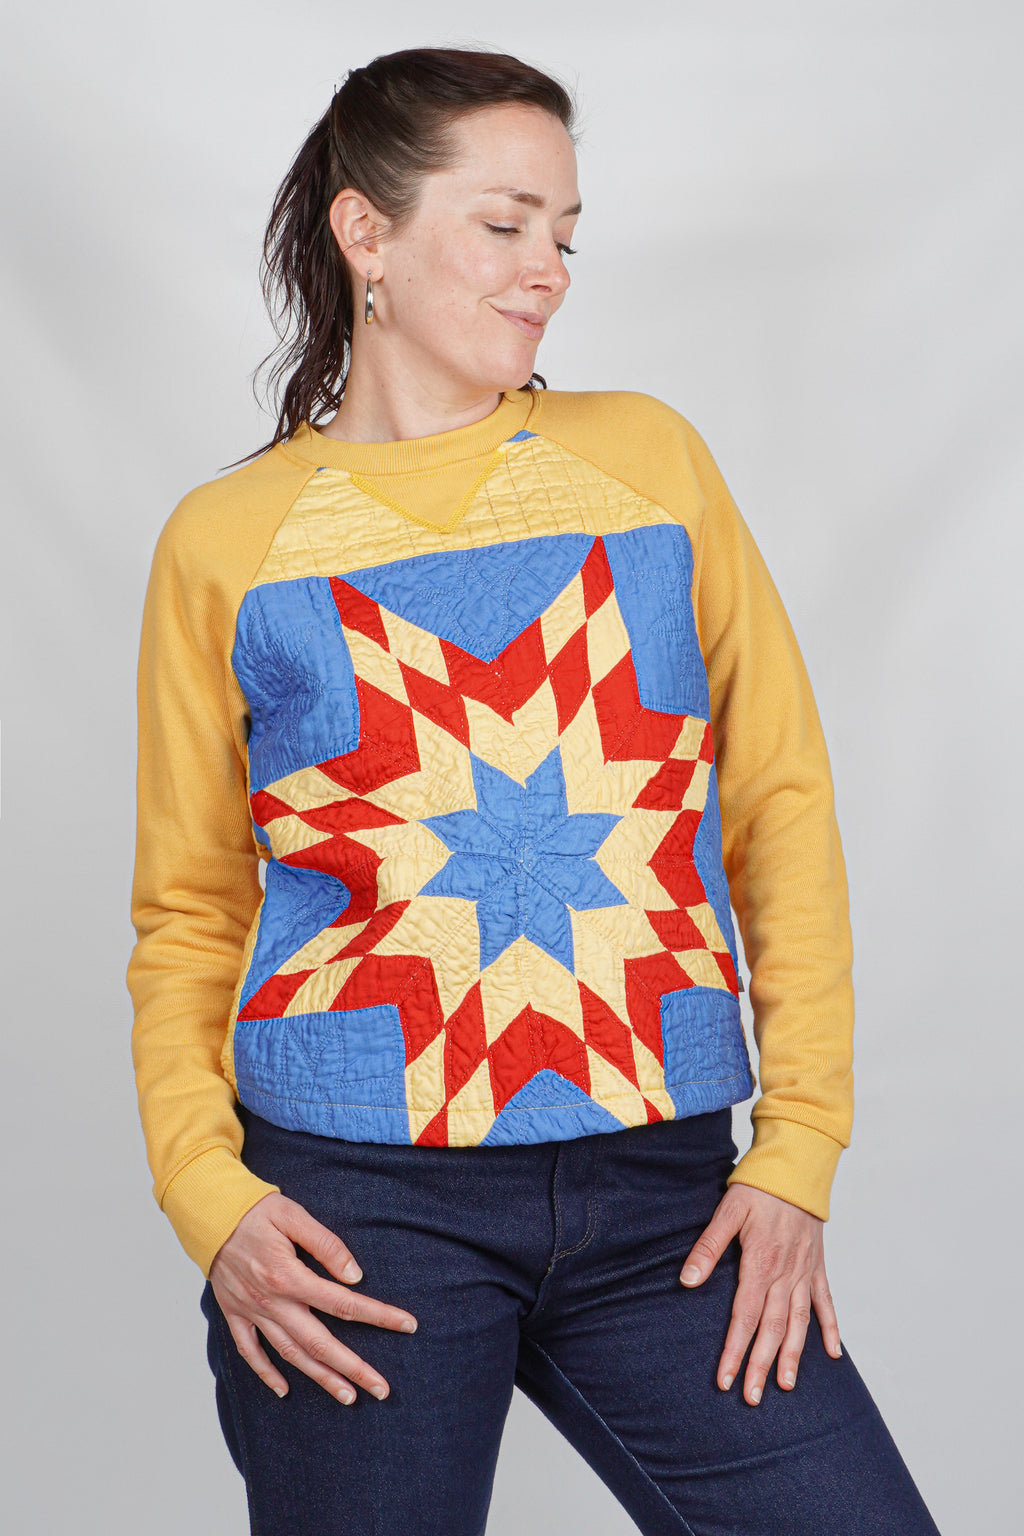 Sierra Sweatshirt | Vintage Lone Star Quilt | Medium